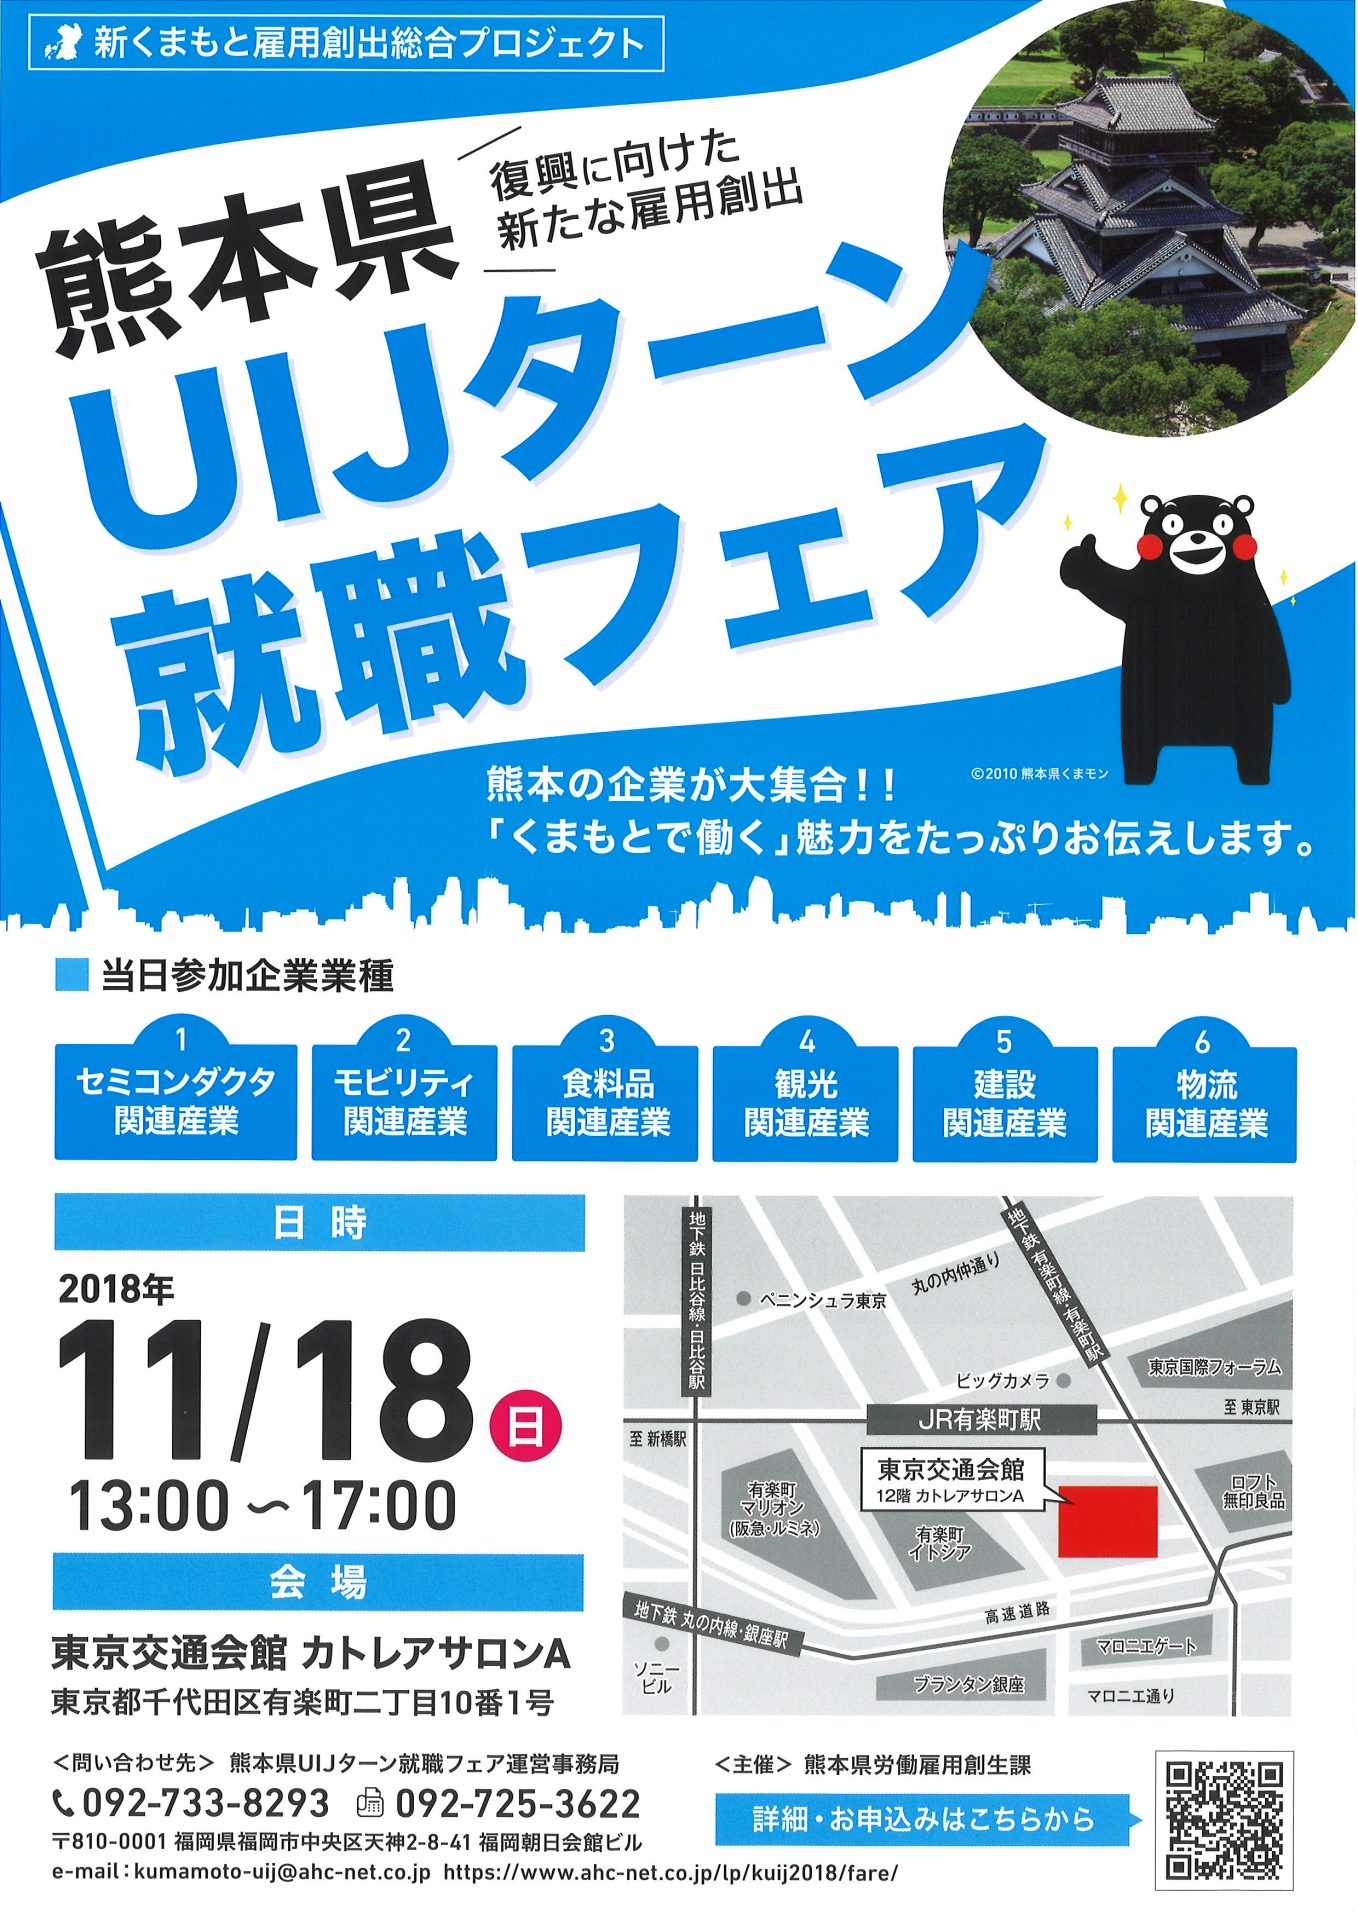 熊本県UIJターン就職フェア | 移住関連イベント情報